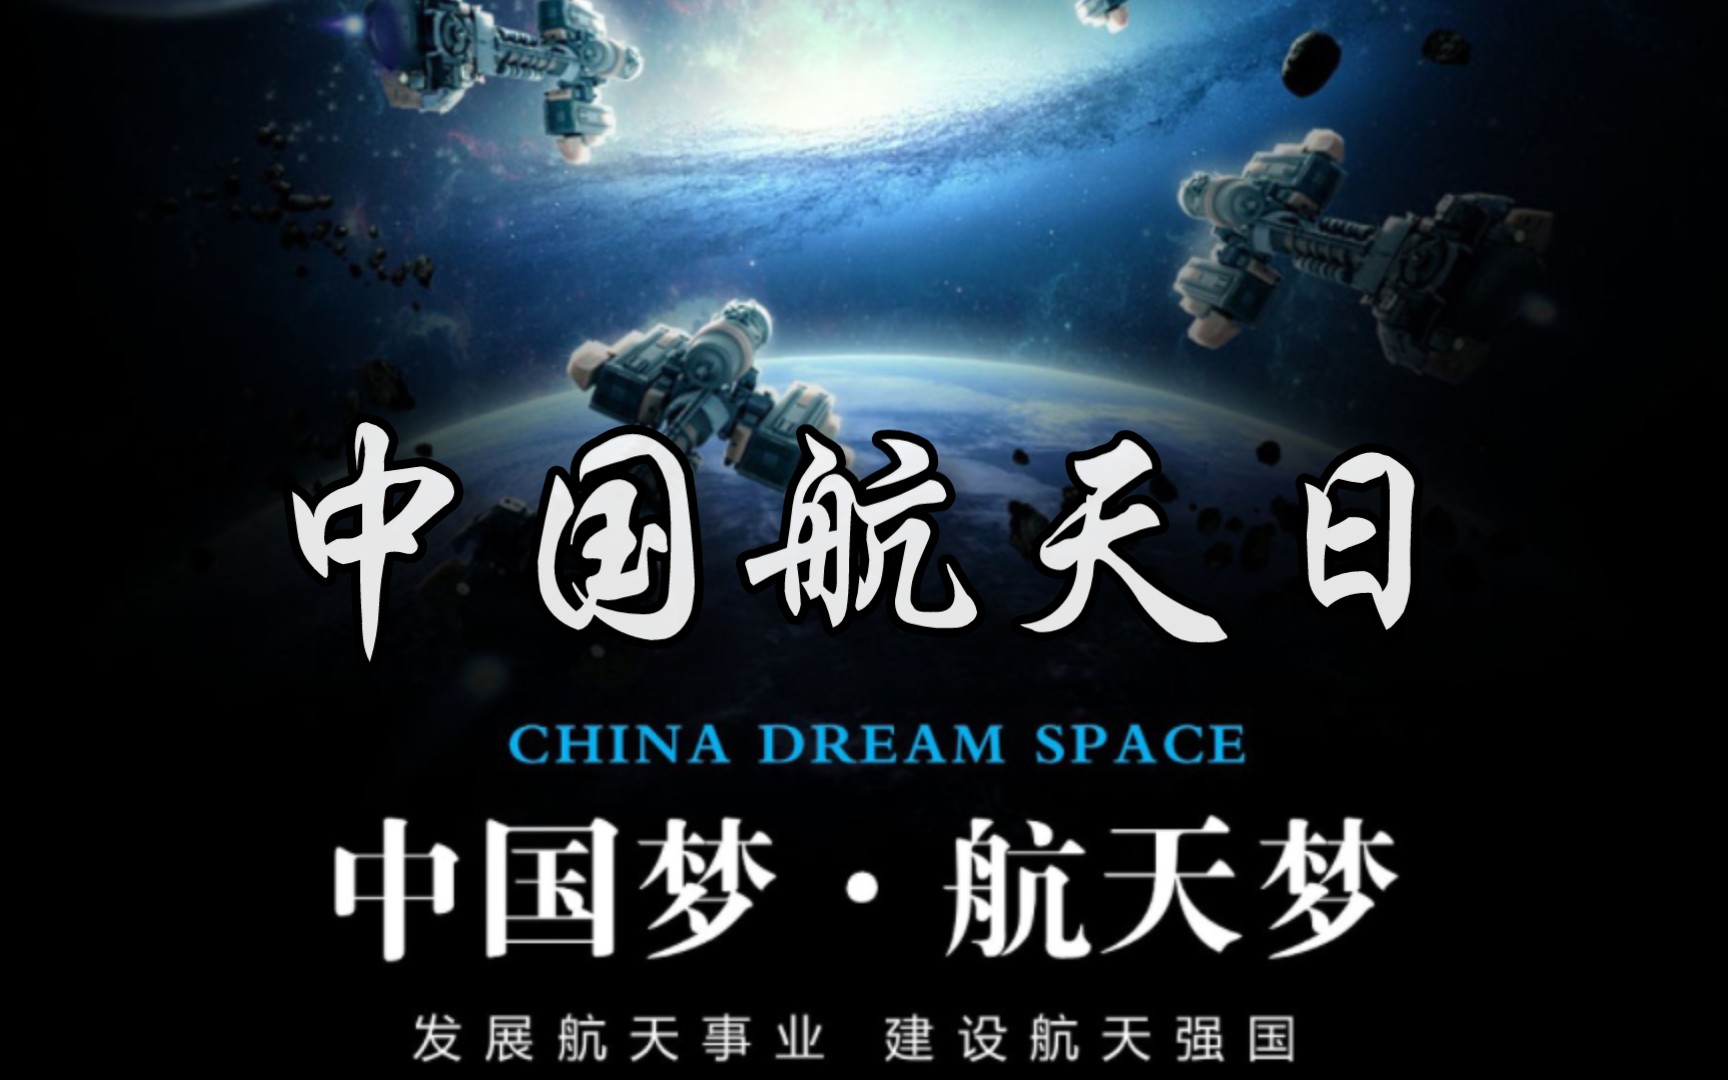 2022中国航天日海报图片